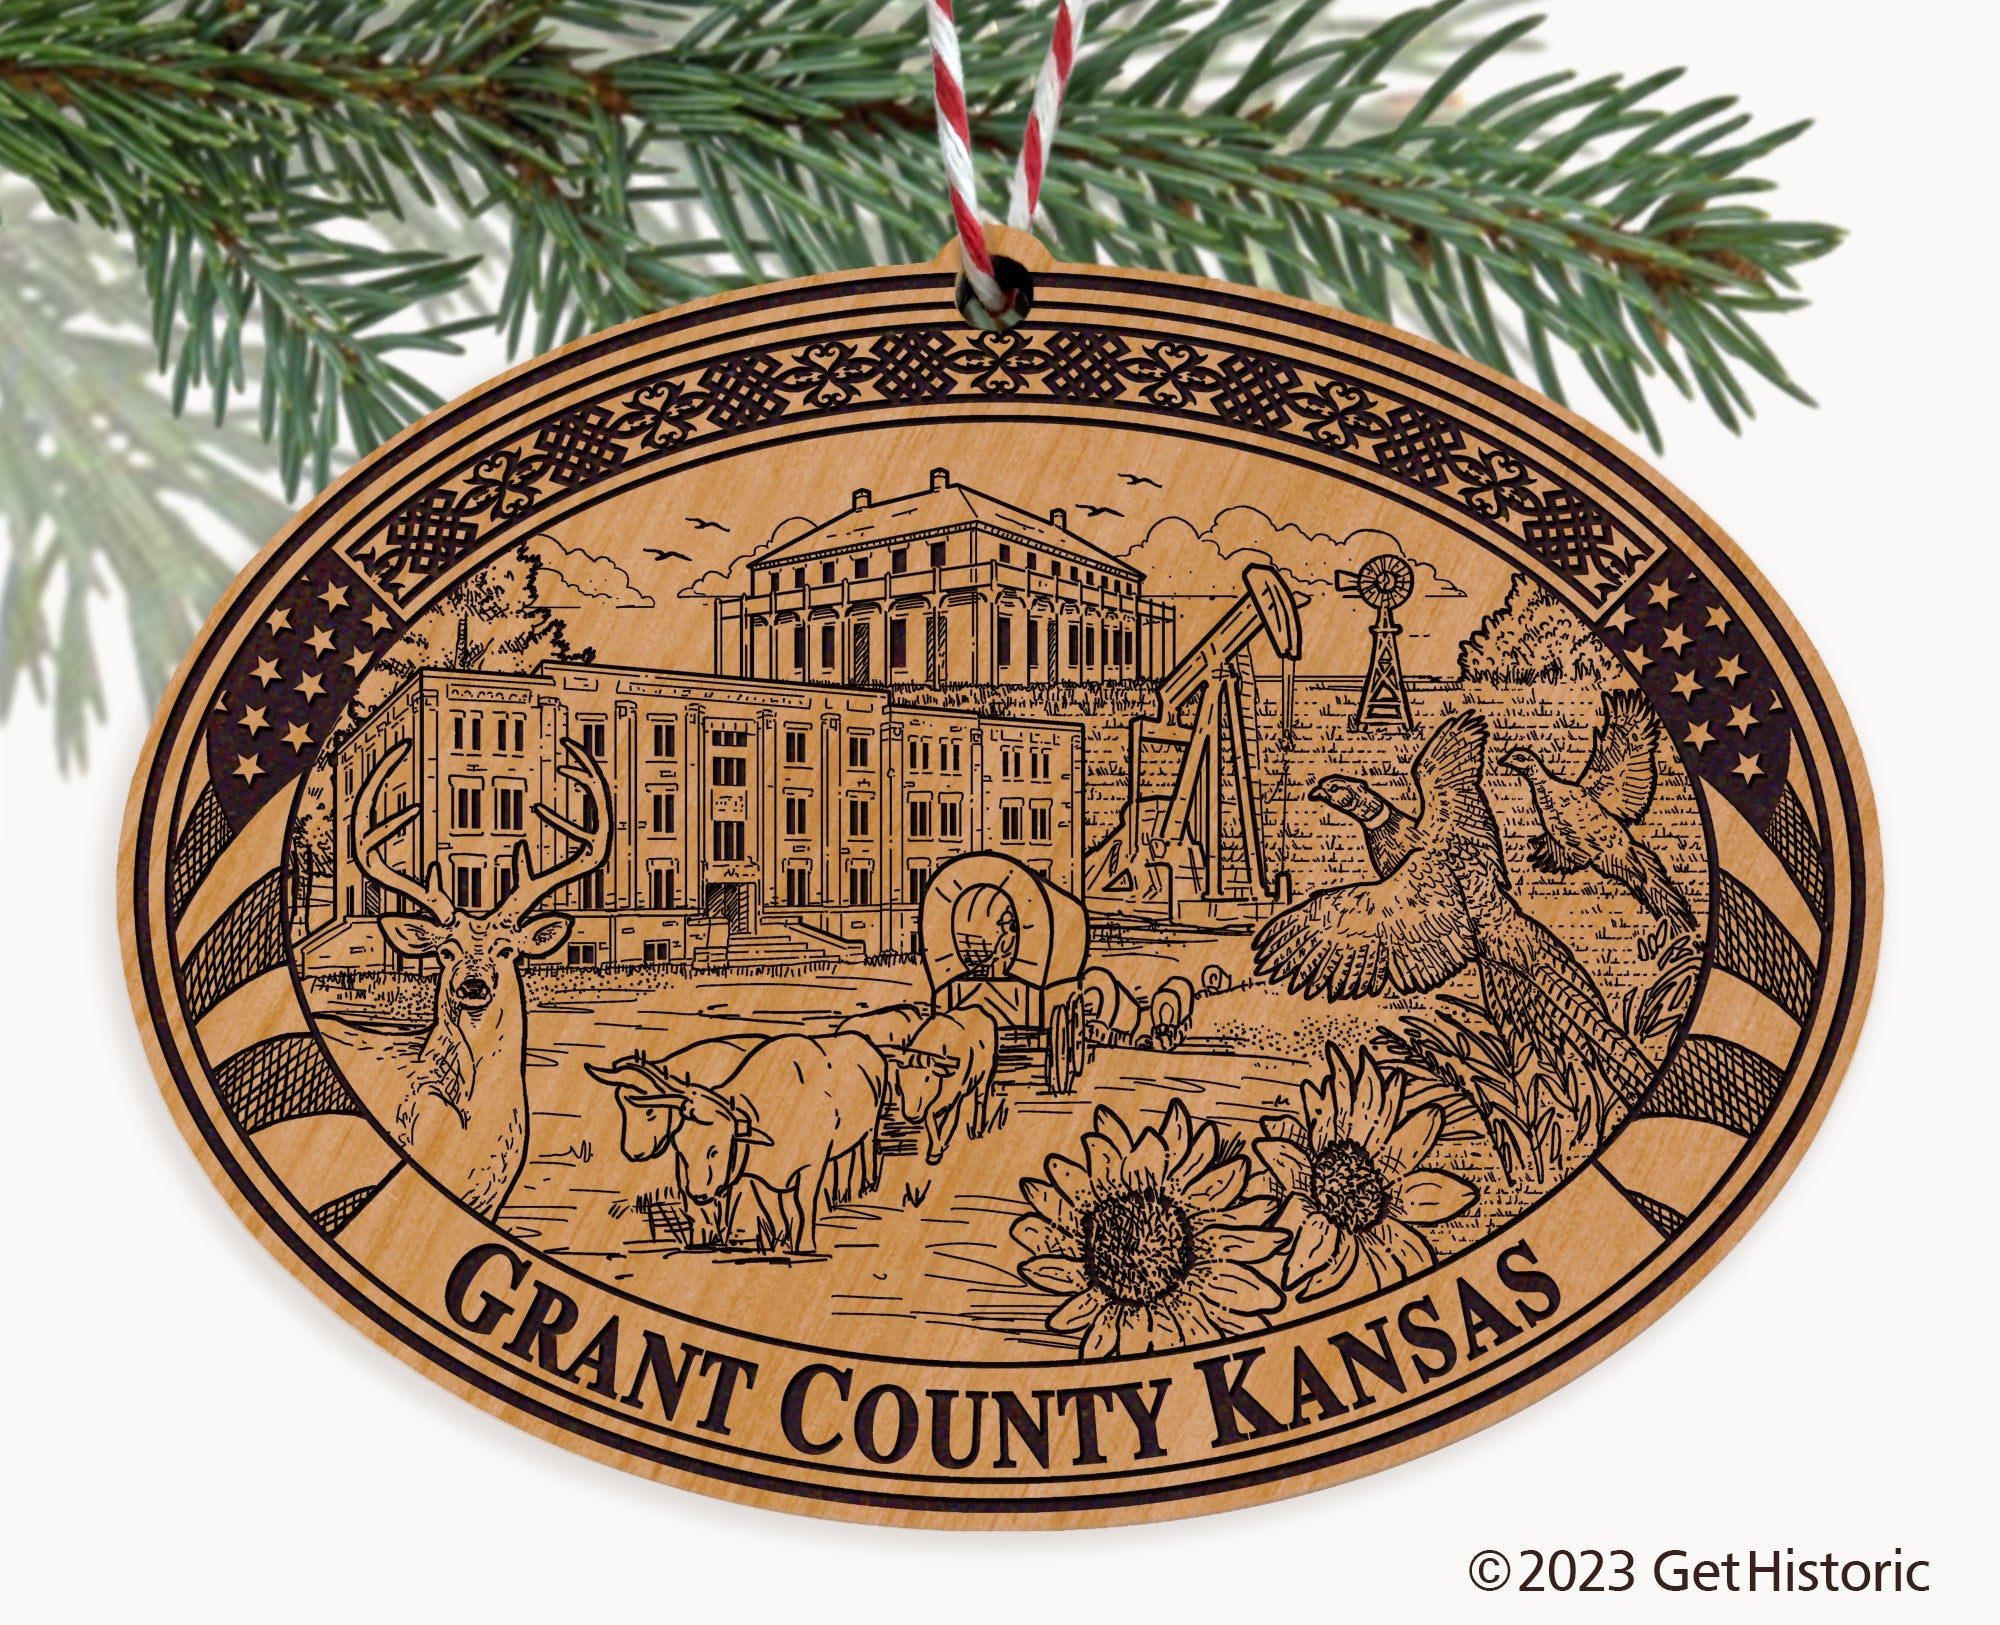 Grant County Kansas Engraved Natural Ornament